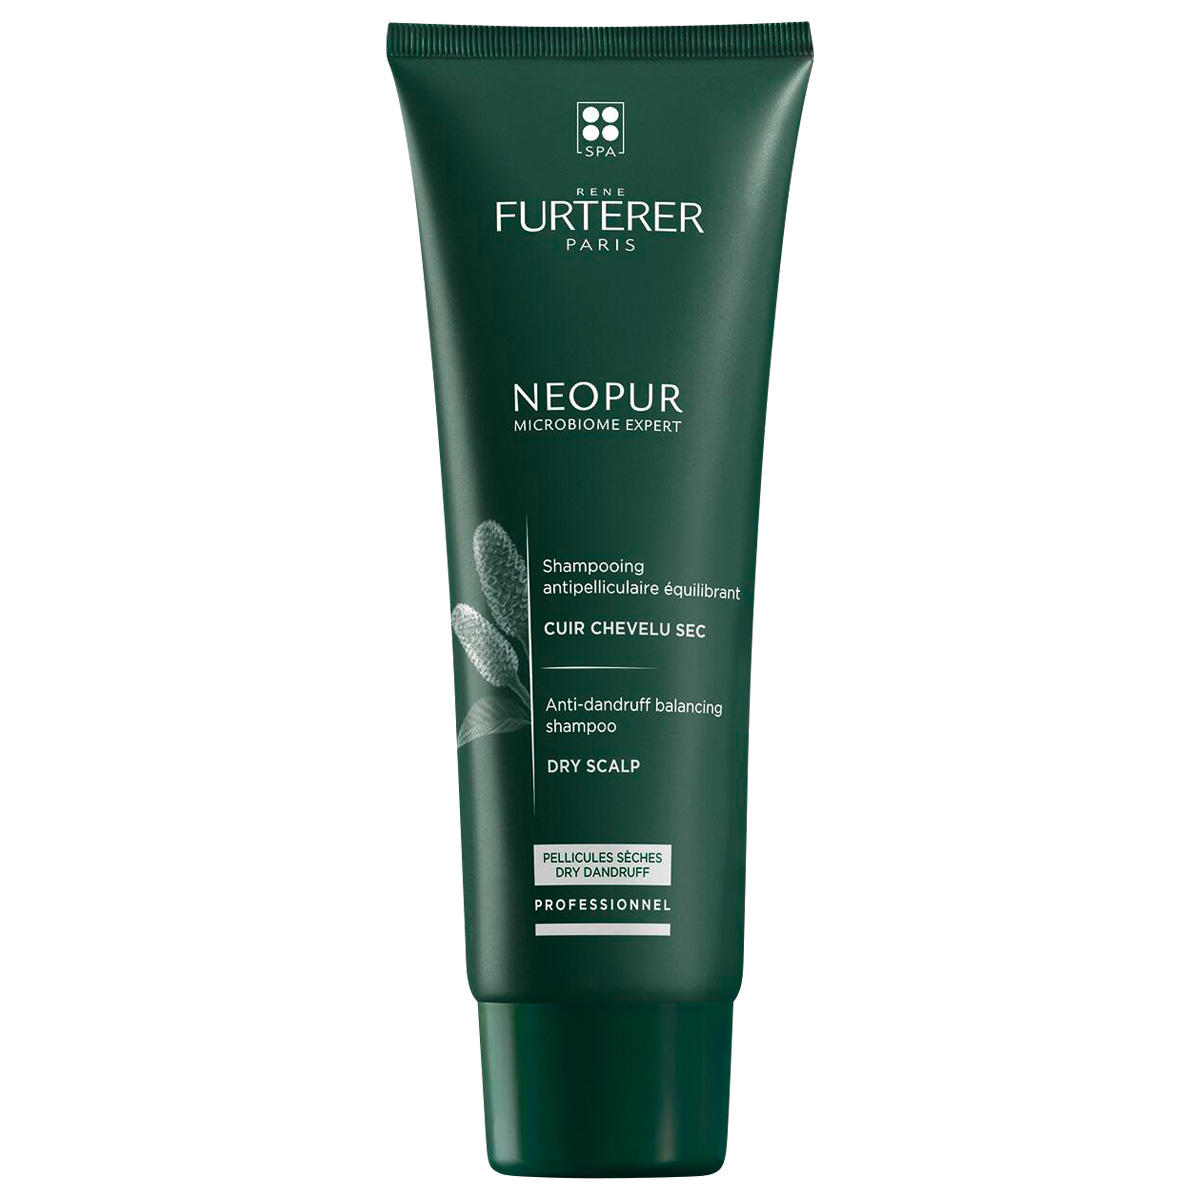 René Furterer Neopur Professionnel Shampoo antiforfora equilibrante per cuoio capelluto secco 250 ml